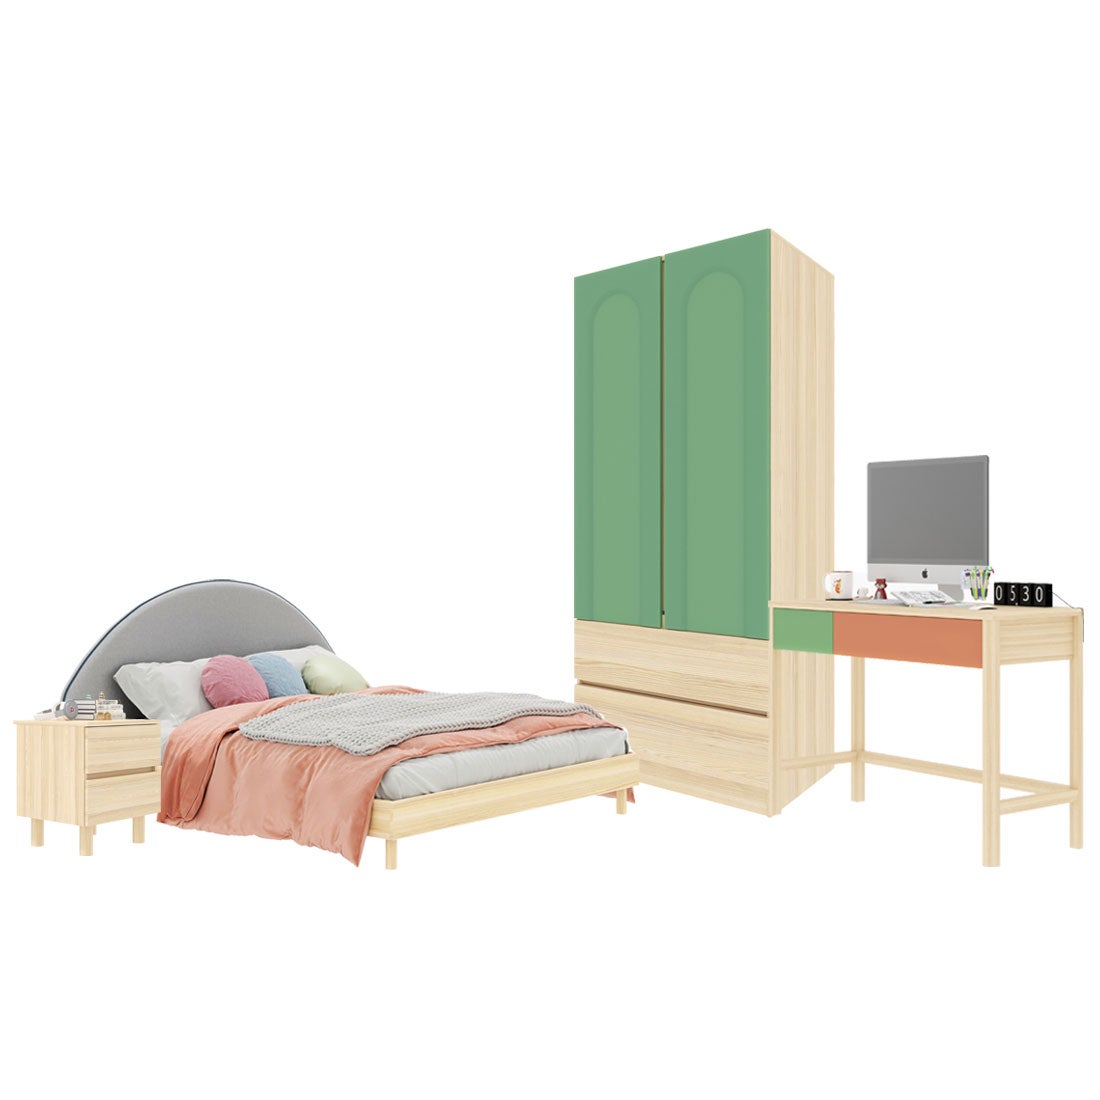 ชุดห้องนอน ขนาด 5 ฟุต-เบาะครีม รุ่น Bingsoo & ตู้เสื้อผ้าลิ้นชัก 90 ซม. พร้อมตู้ข้างเตียง สีเขียว01